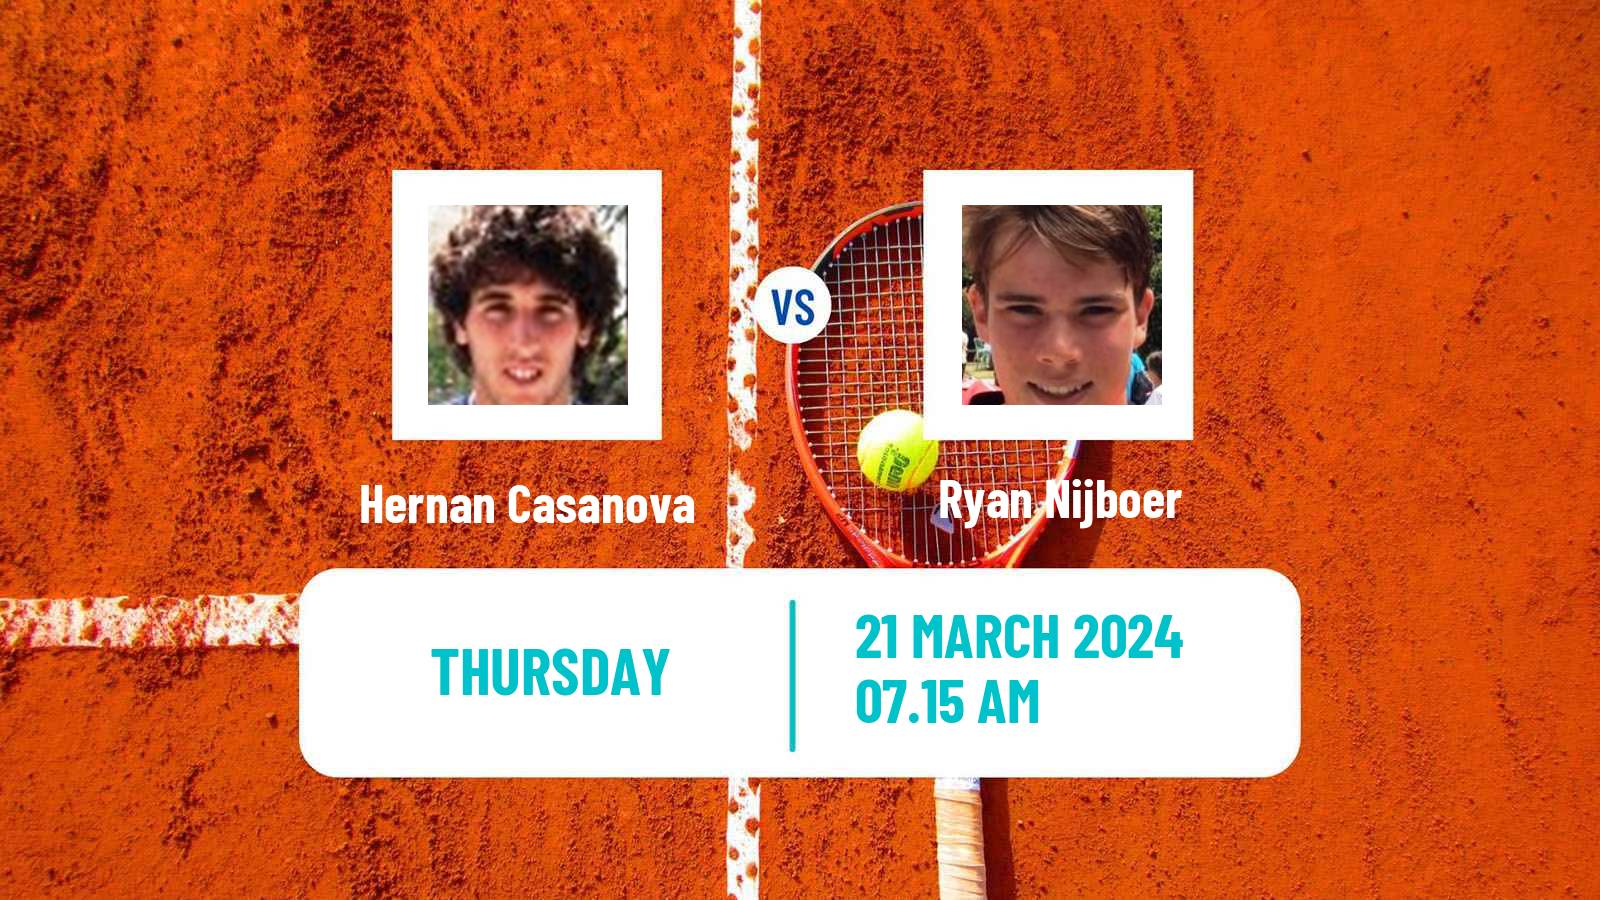 Tennis ITF M25 Badalona Men Hernan Casanova - Ryan Nijboer